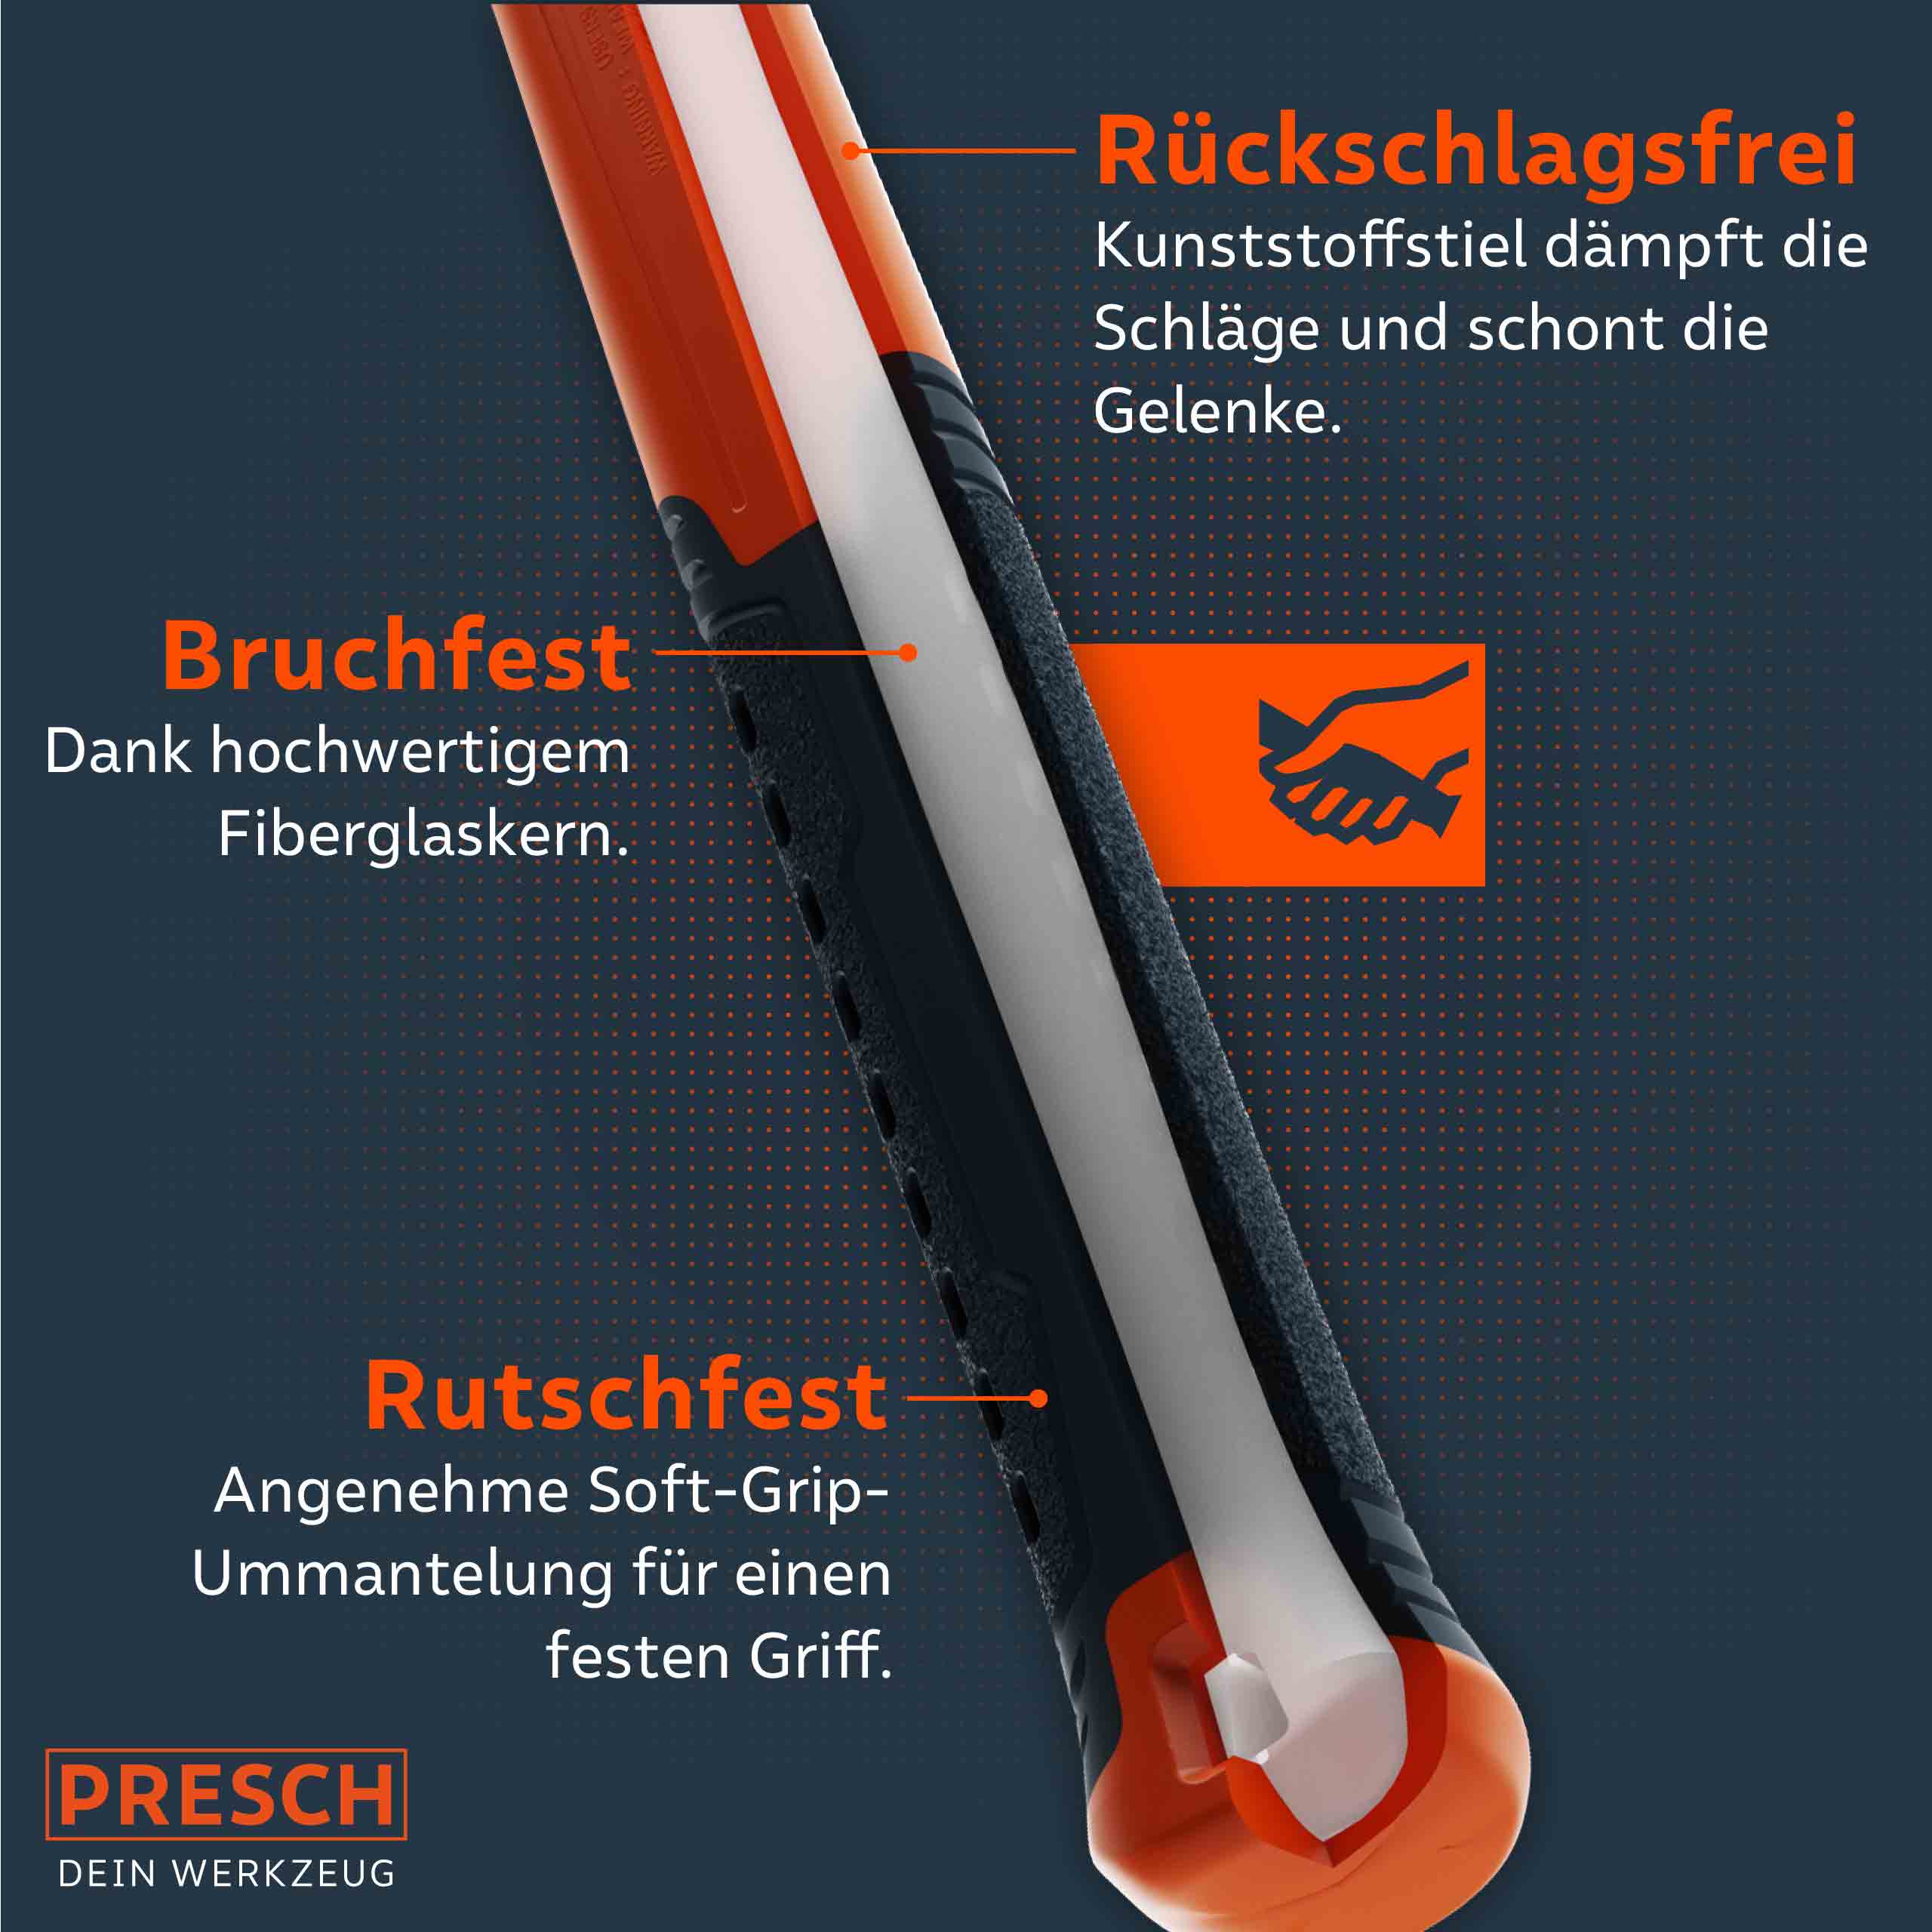 Presch Hammer mit rutschfestem Griff und Fiberglasstiel, robustes Handwerkzeug mit ergonomischem Design.